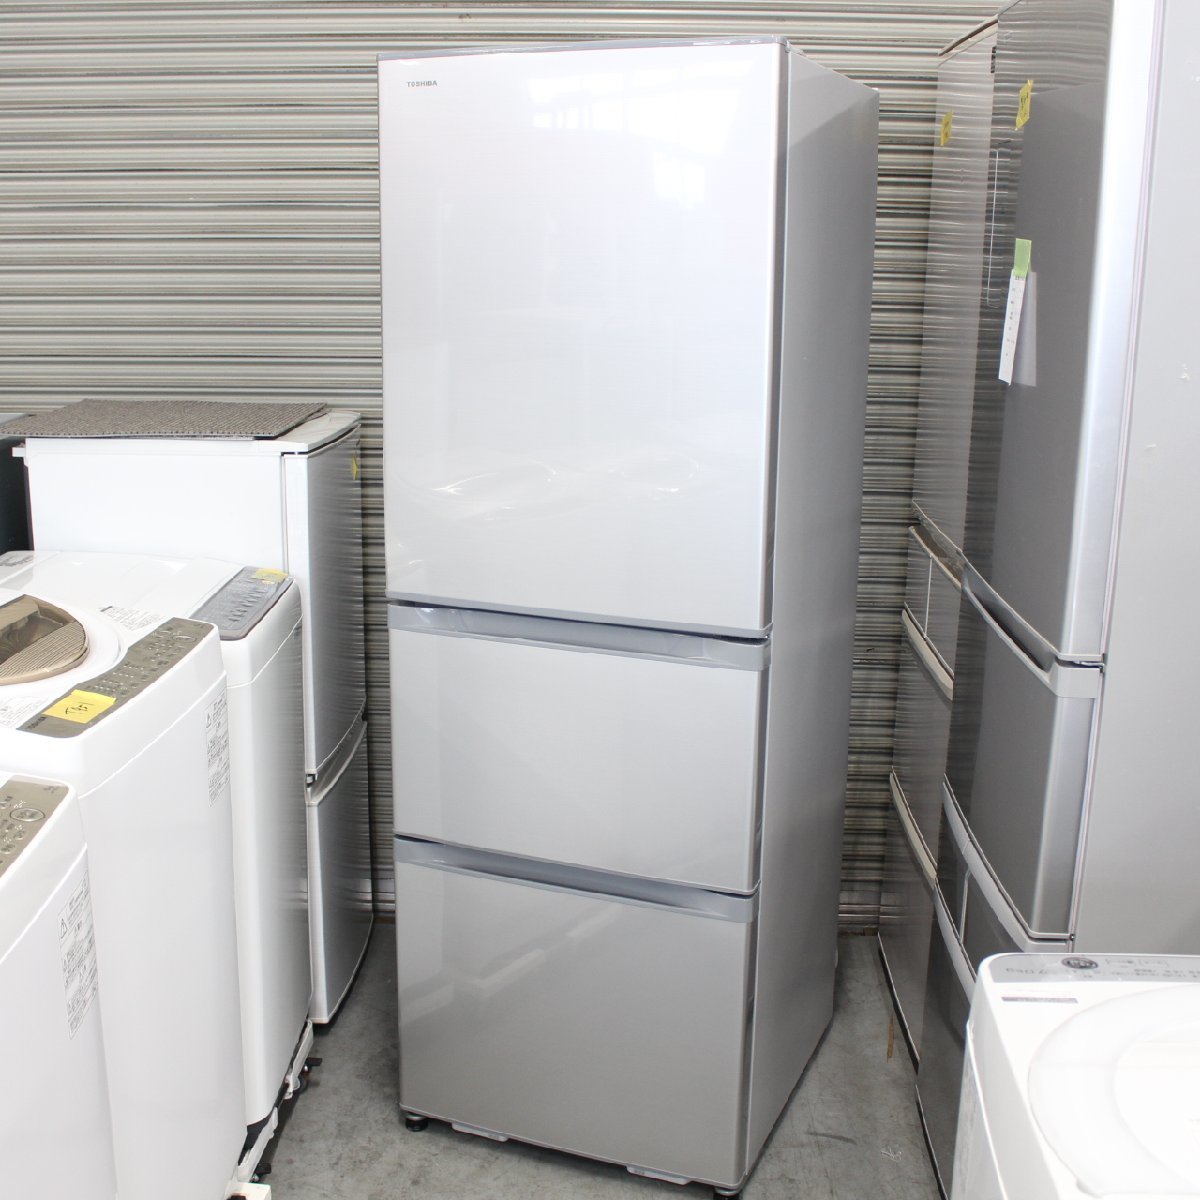 東京都豊島区にて 東芝 冷凍冷蔵庫 GR-S36S(S) 2020年製 を出張買取させて頂きました。